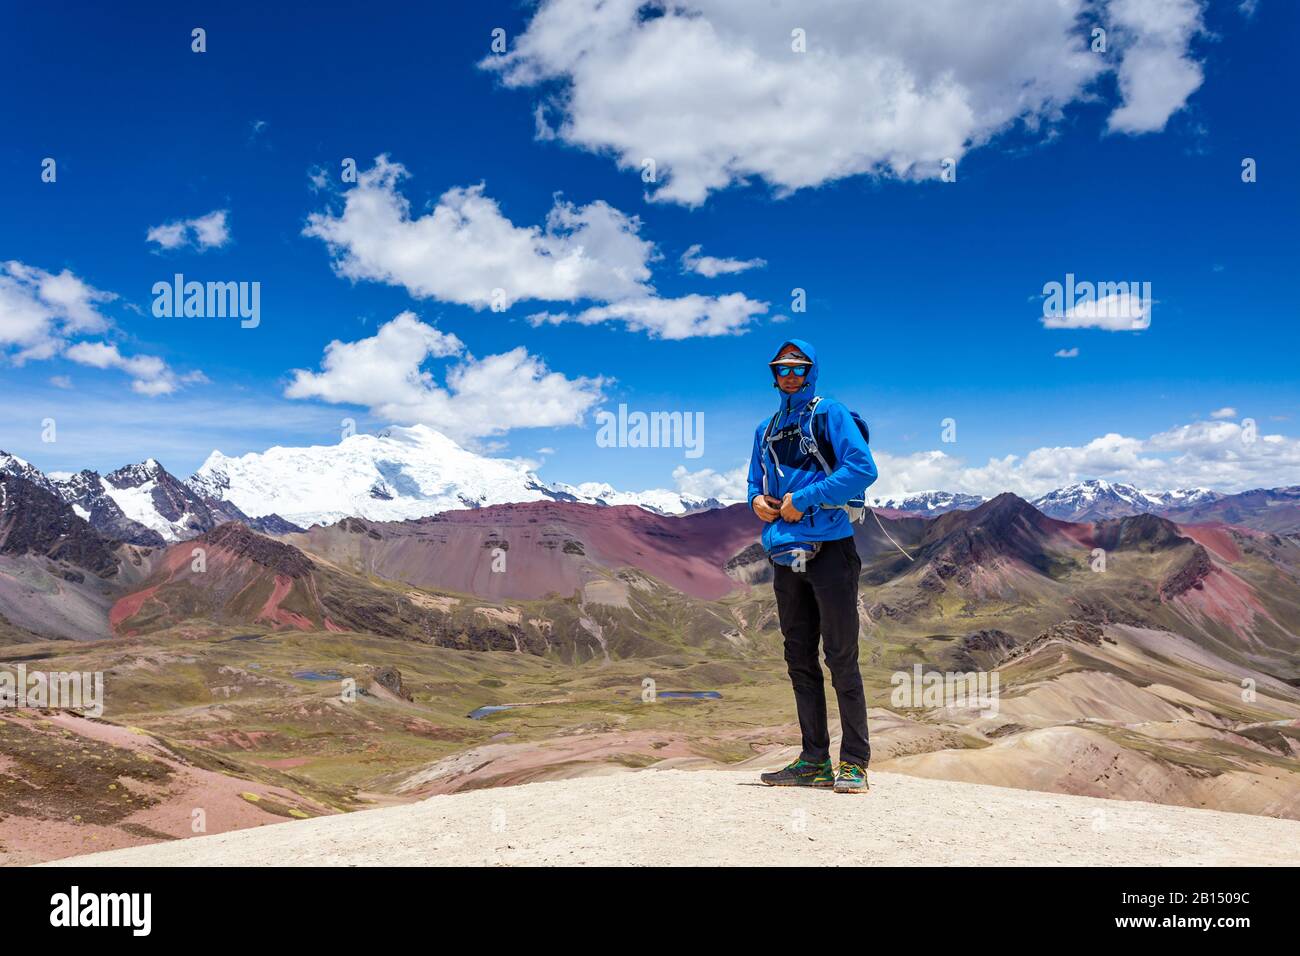 Ein Mann steht auf dem Regenbogengebirge Von Peru. Peruanische Anden. Ausangate Berg. Stockfoto